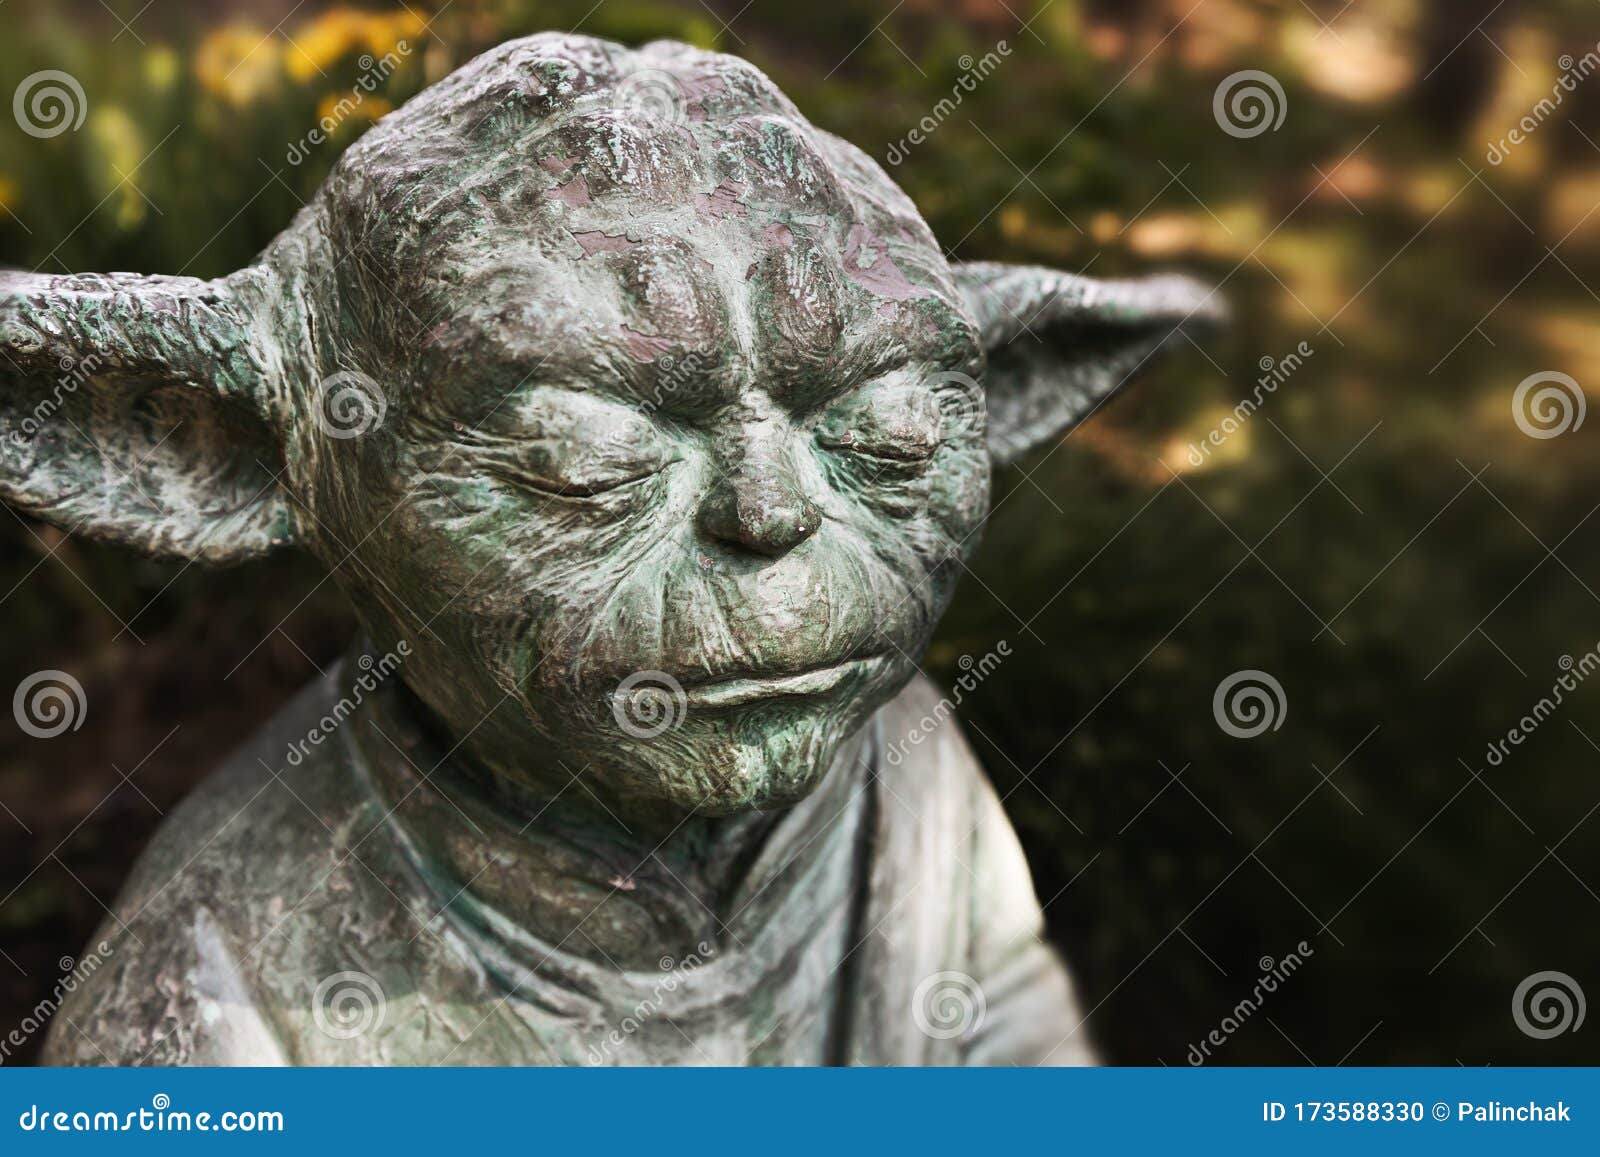 221 Maitre Yoda Photos Libres De Droits Et Gratuites De Dreamstime